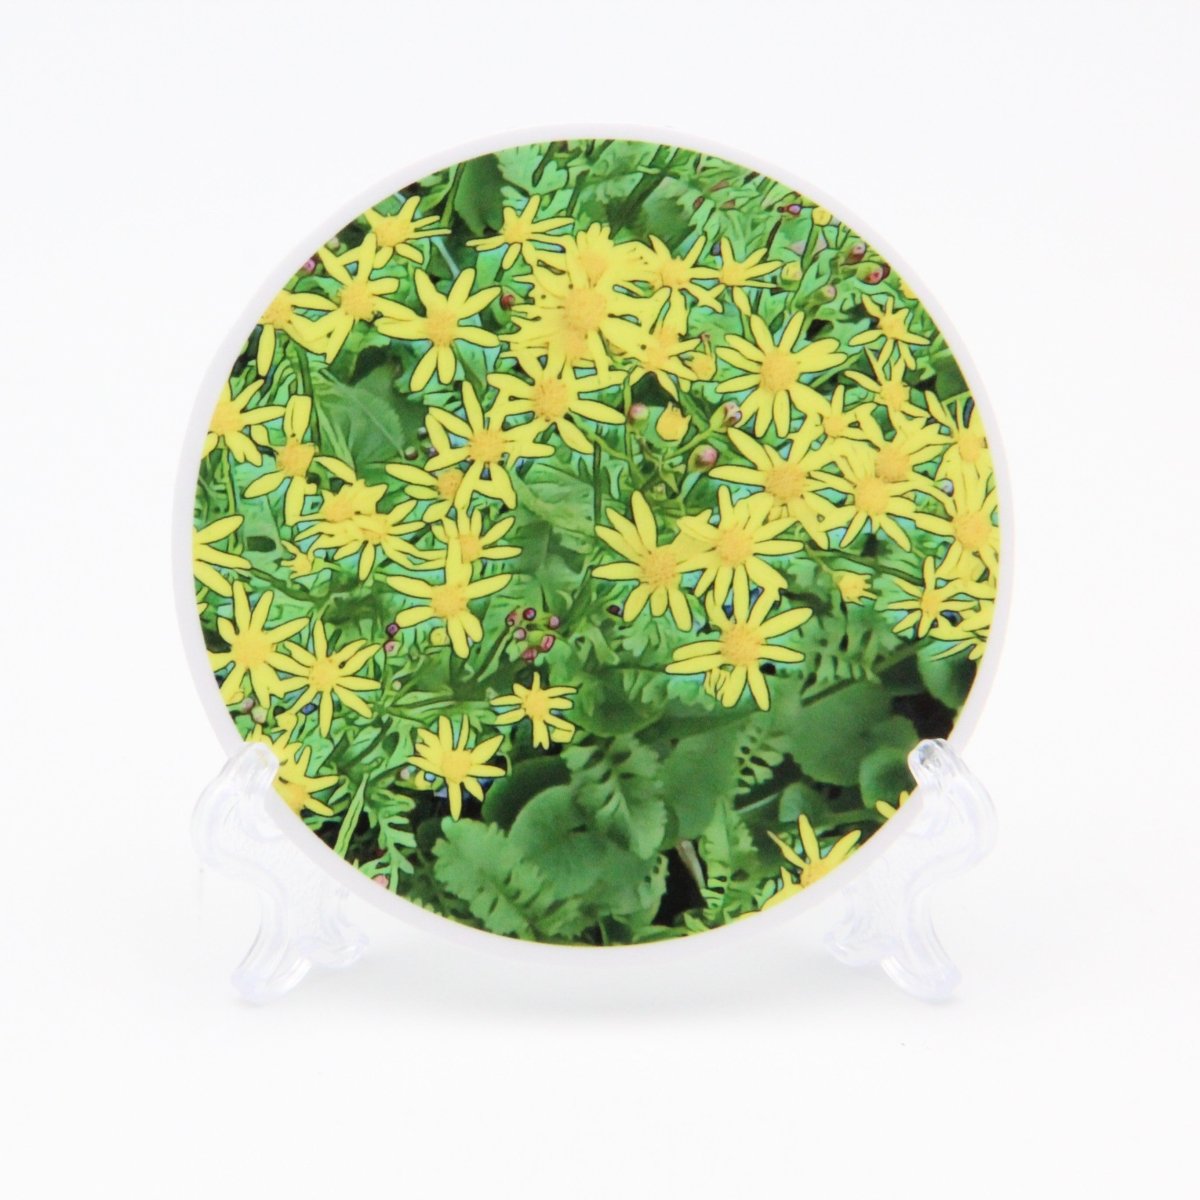 Packera Aurea Flowers 3 inch Round Premium Vinyl Sticker